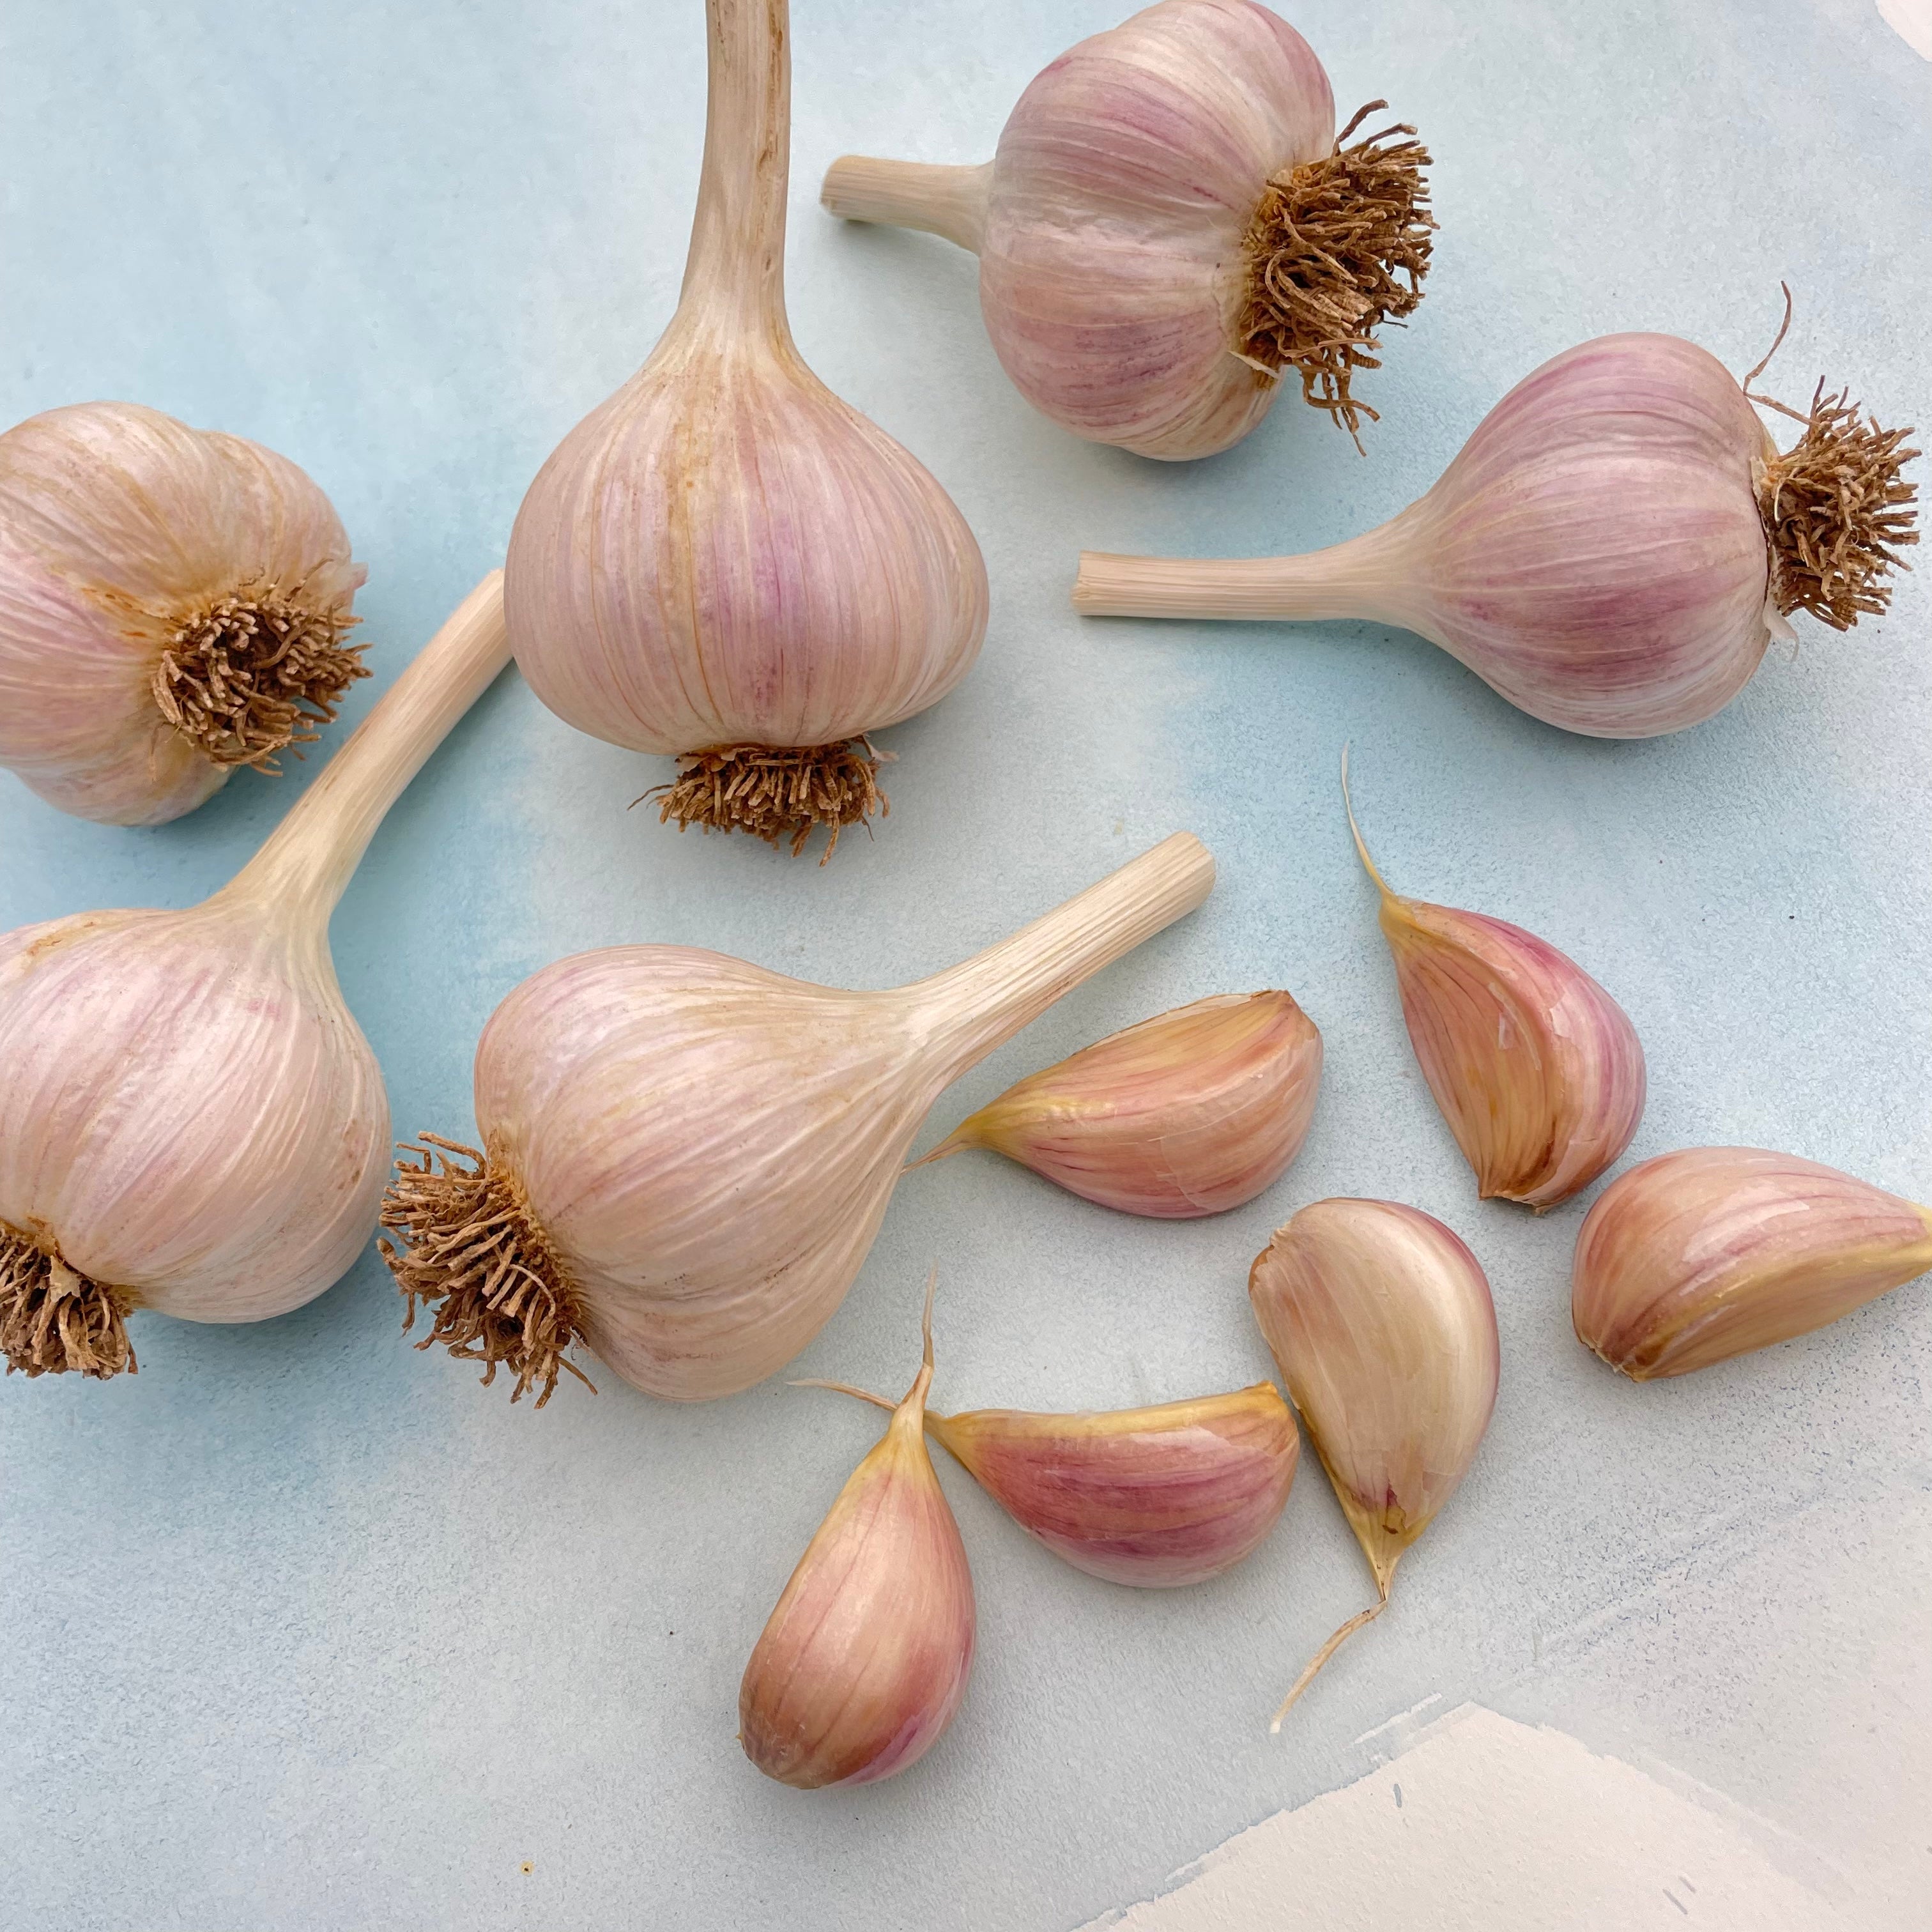 German Extra Hardy Hardneck Garlic